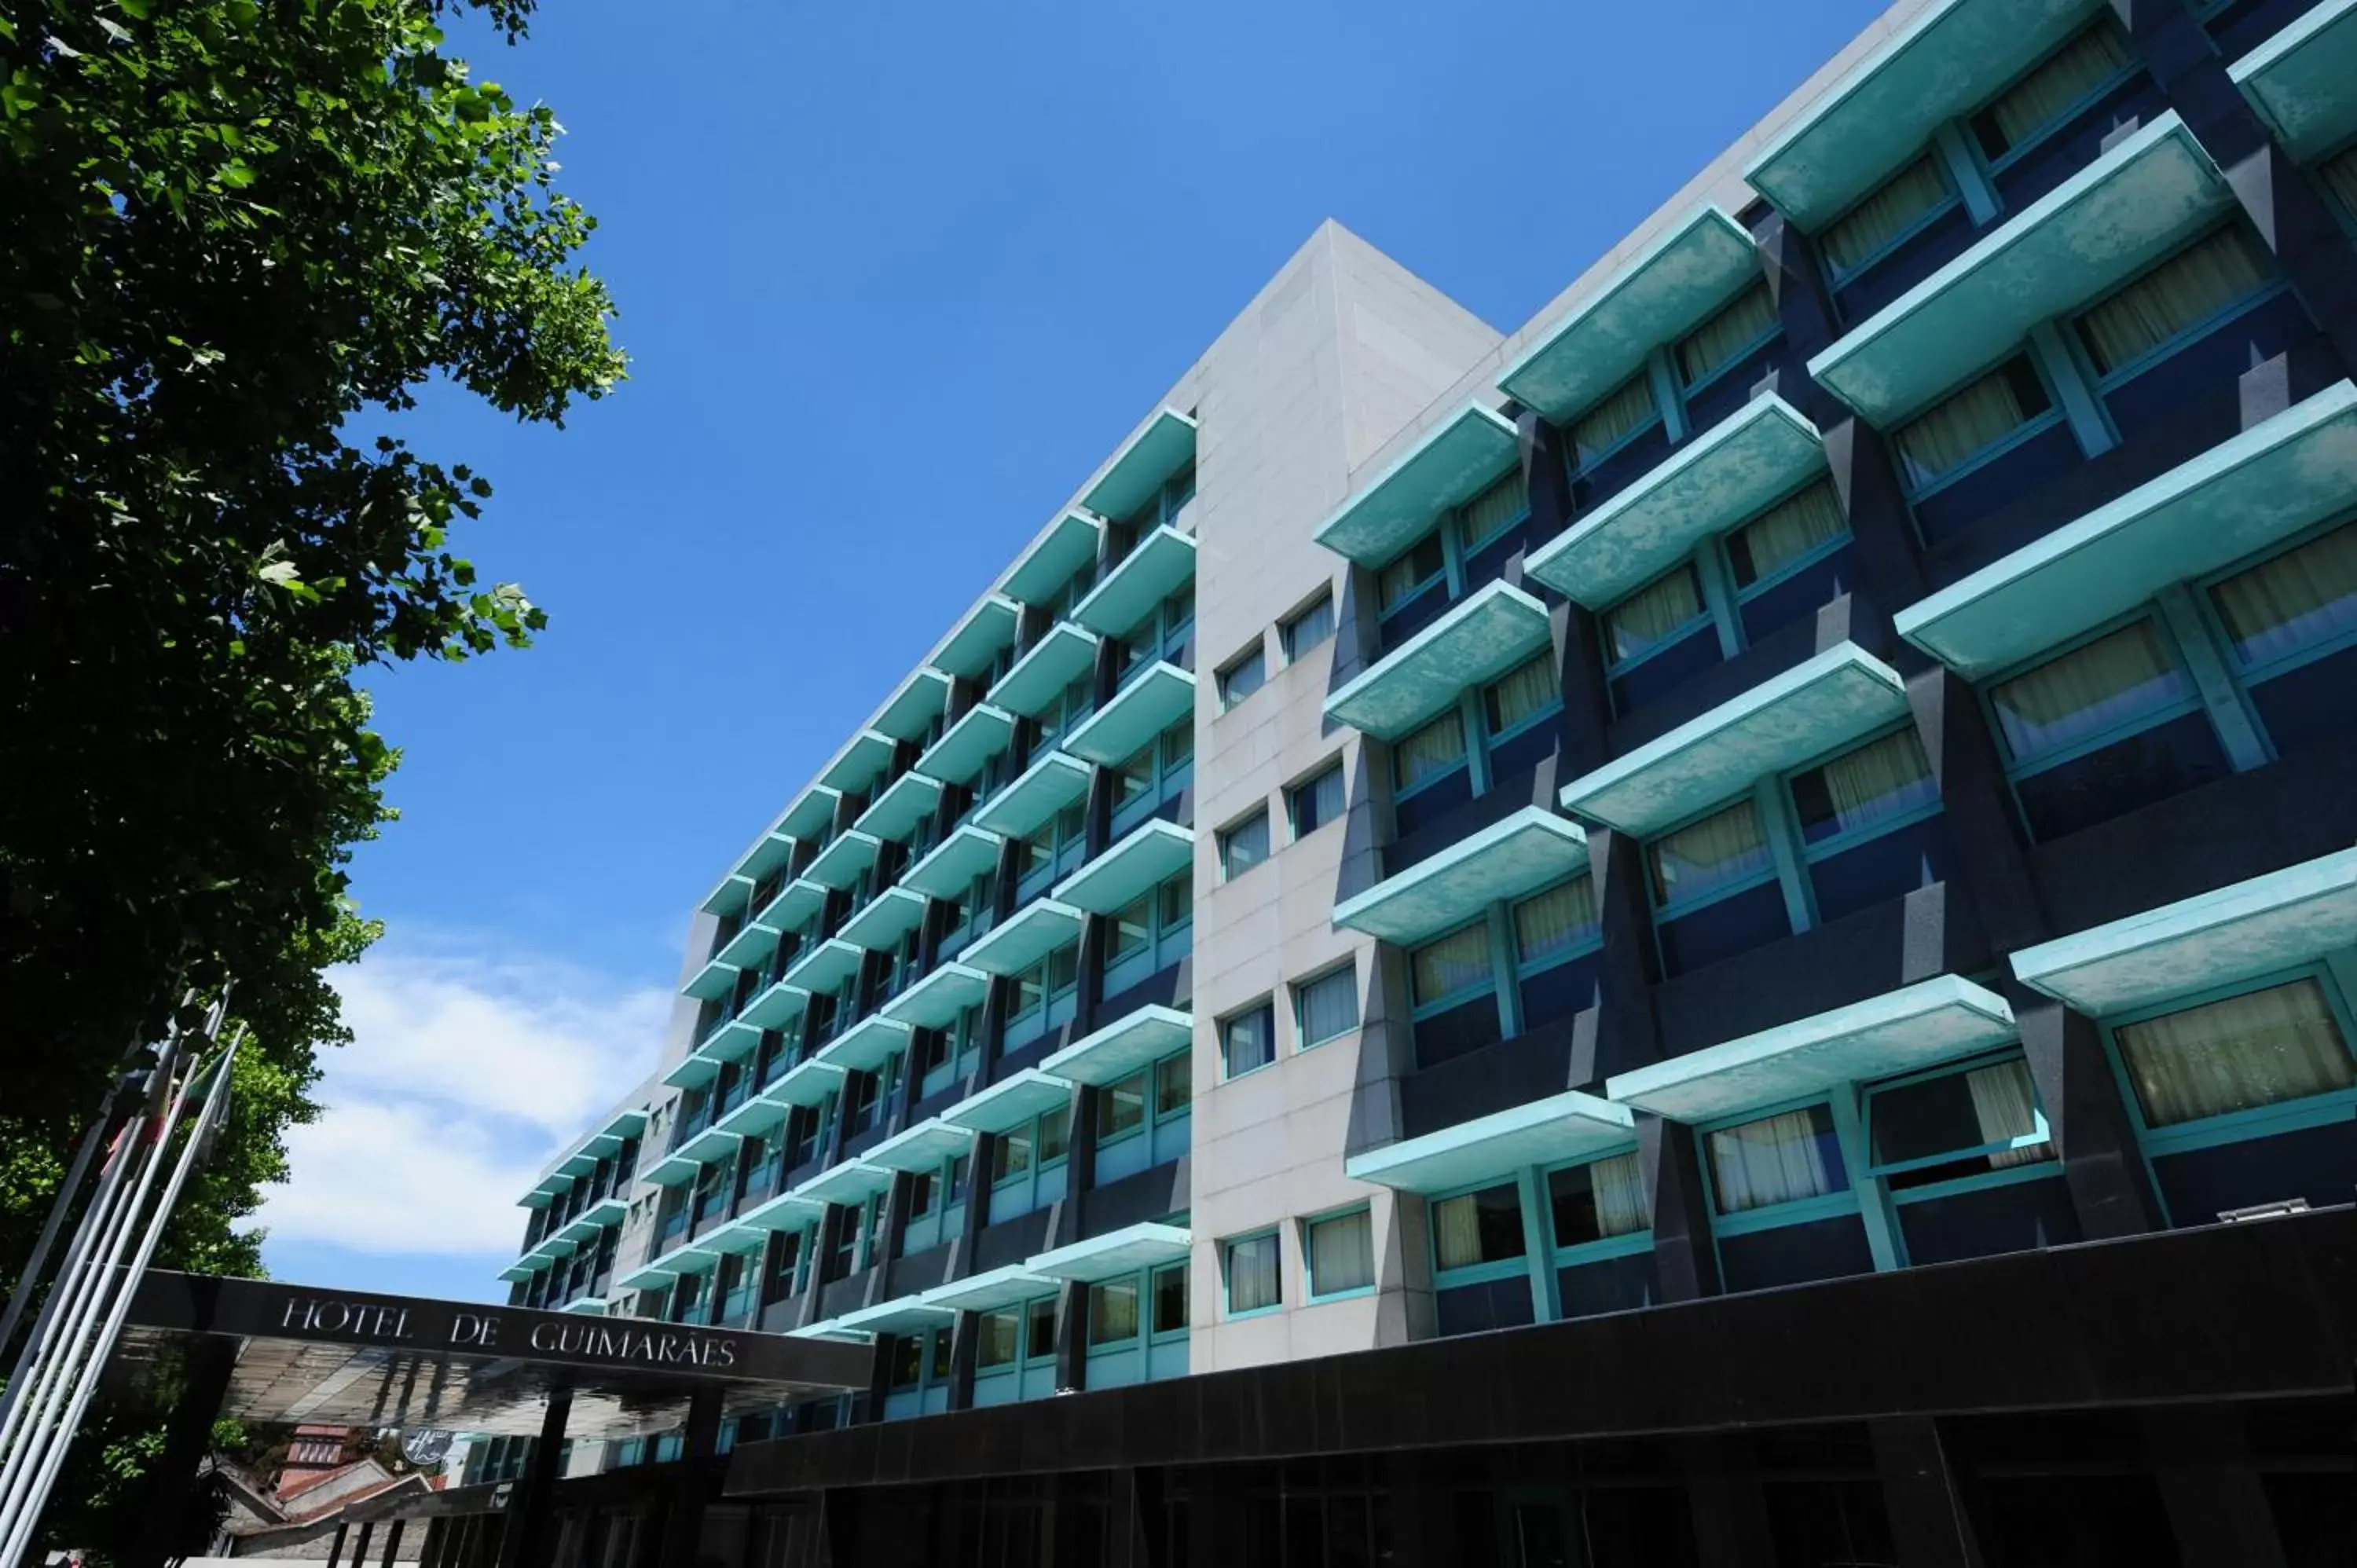 Property Building in Hotel de Guimaraes